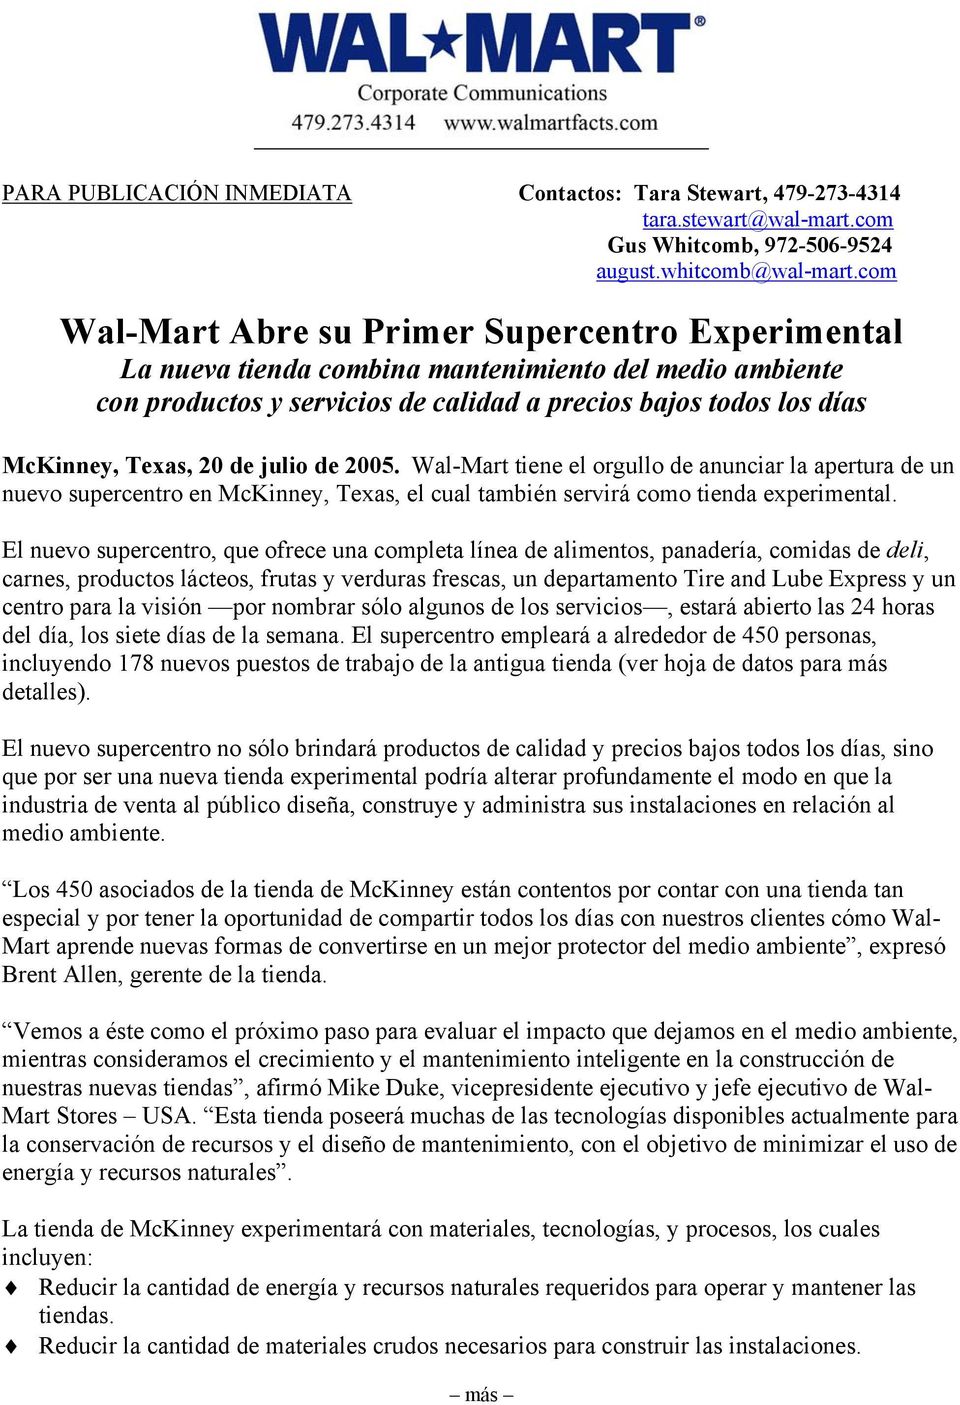 de julio de 2005. Wal-Mart tiene el orgullo de anunciar la apertura de un nuevo supercentro en McKinney, Texas, el cual también servirá como tienda experimental.